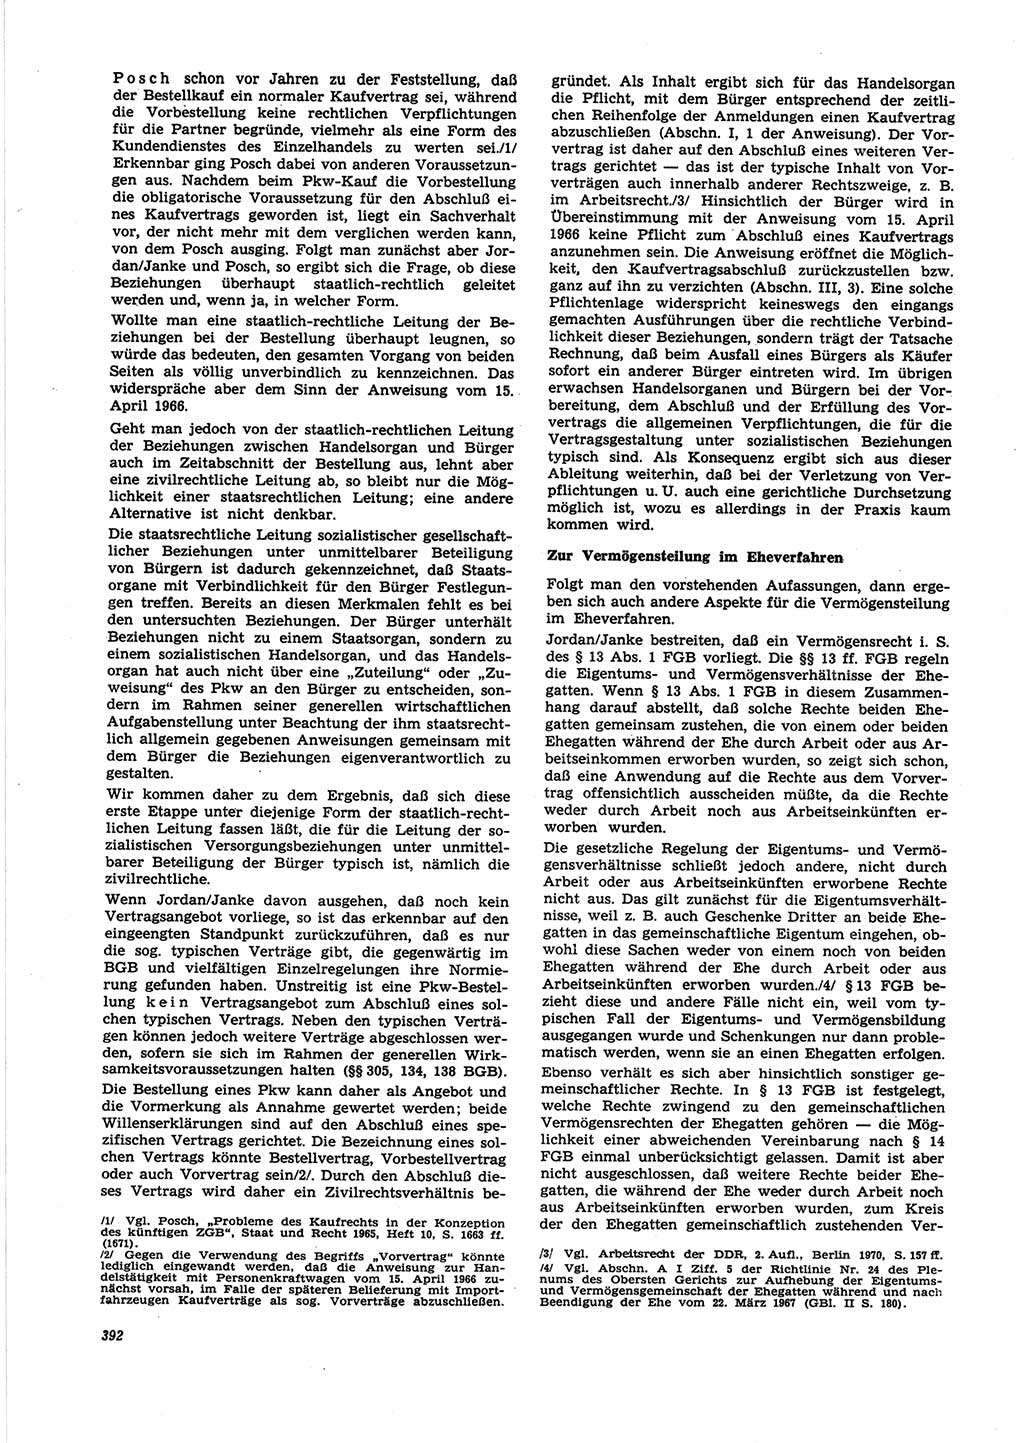 Neue Justiz (NJ), Zeitschrift für Recht und Rechtswissenschaft [Deutsche Demokratische Republik (DDR)], 25. Jahrgang 1971, Seite 392 (NJ DDR 1971, S. 392)